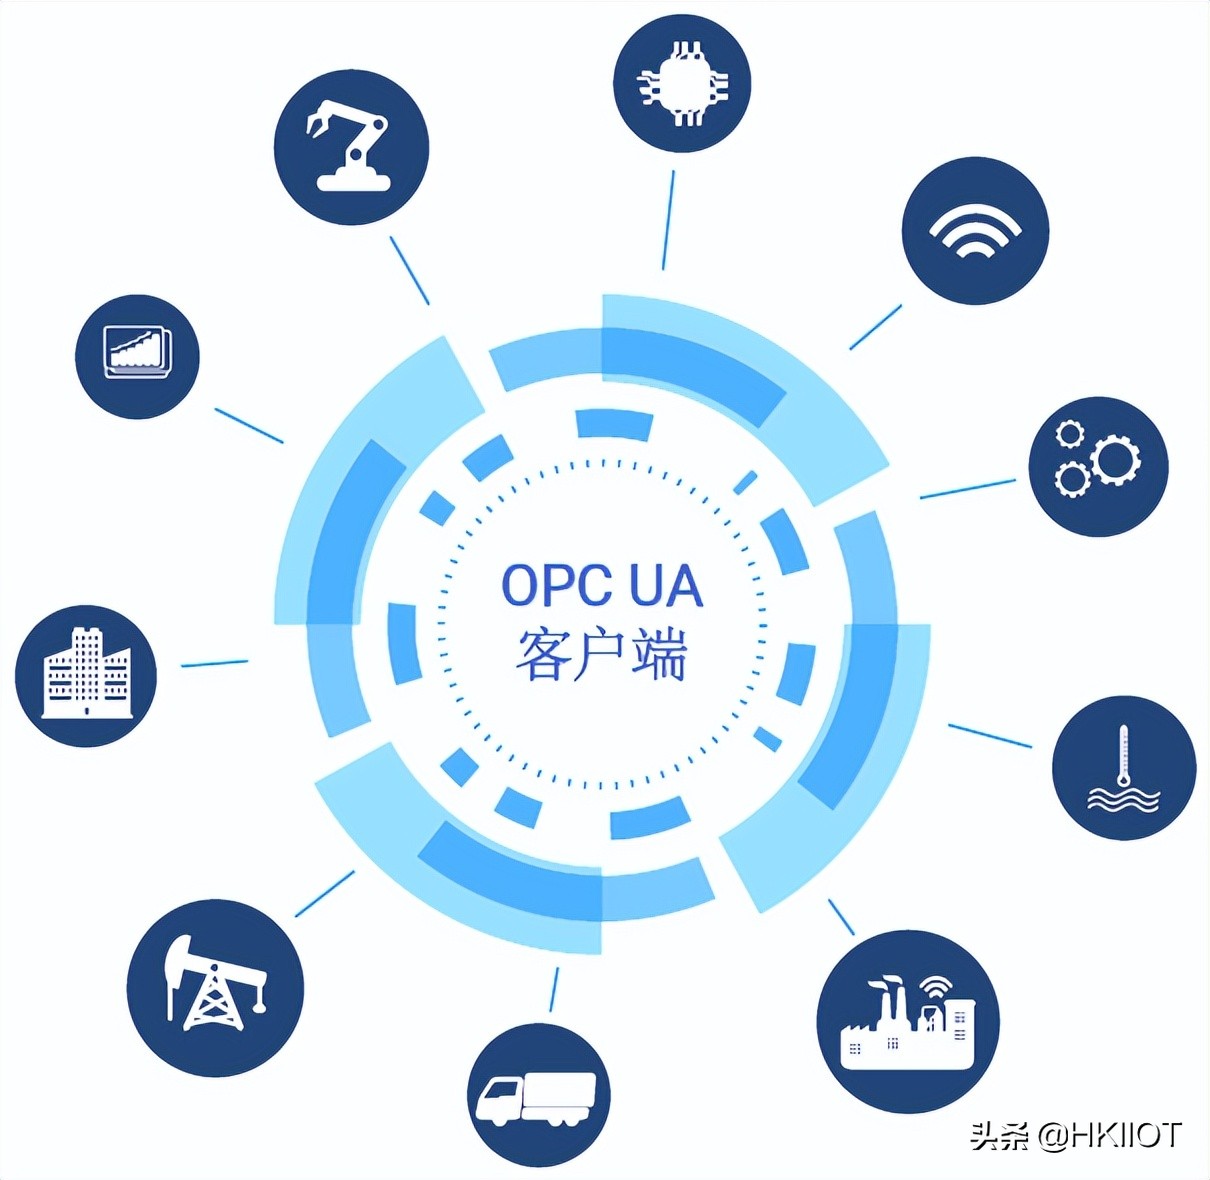 虹科OPC UA解决方案构建信息化工厂的全局连接